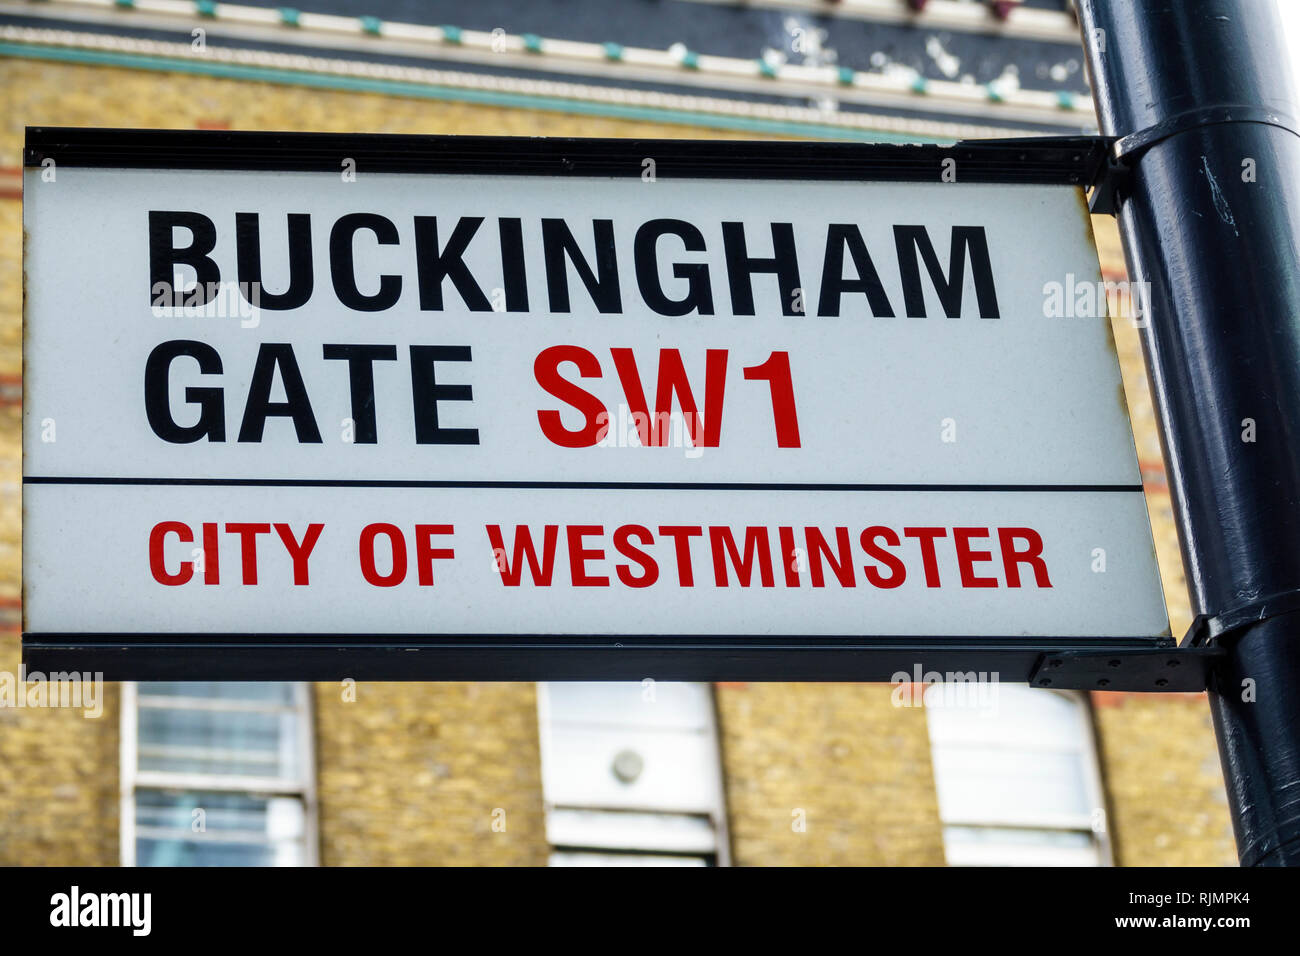 Vereinigtes Königreich Großbritannien England London City of Westminster Buckingham Gate SW1 Straßenschild Lage Sightseeing Besucher reisen t Stockfoto